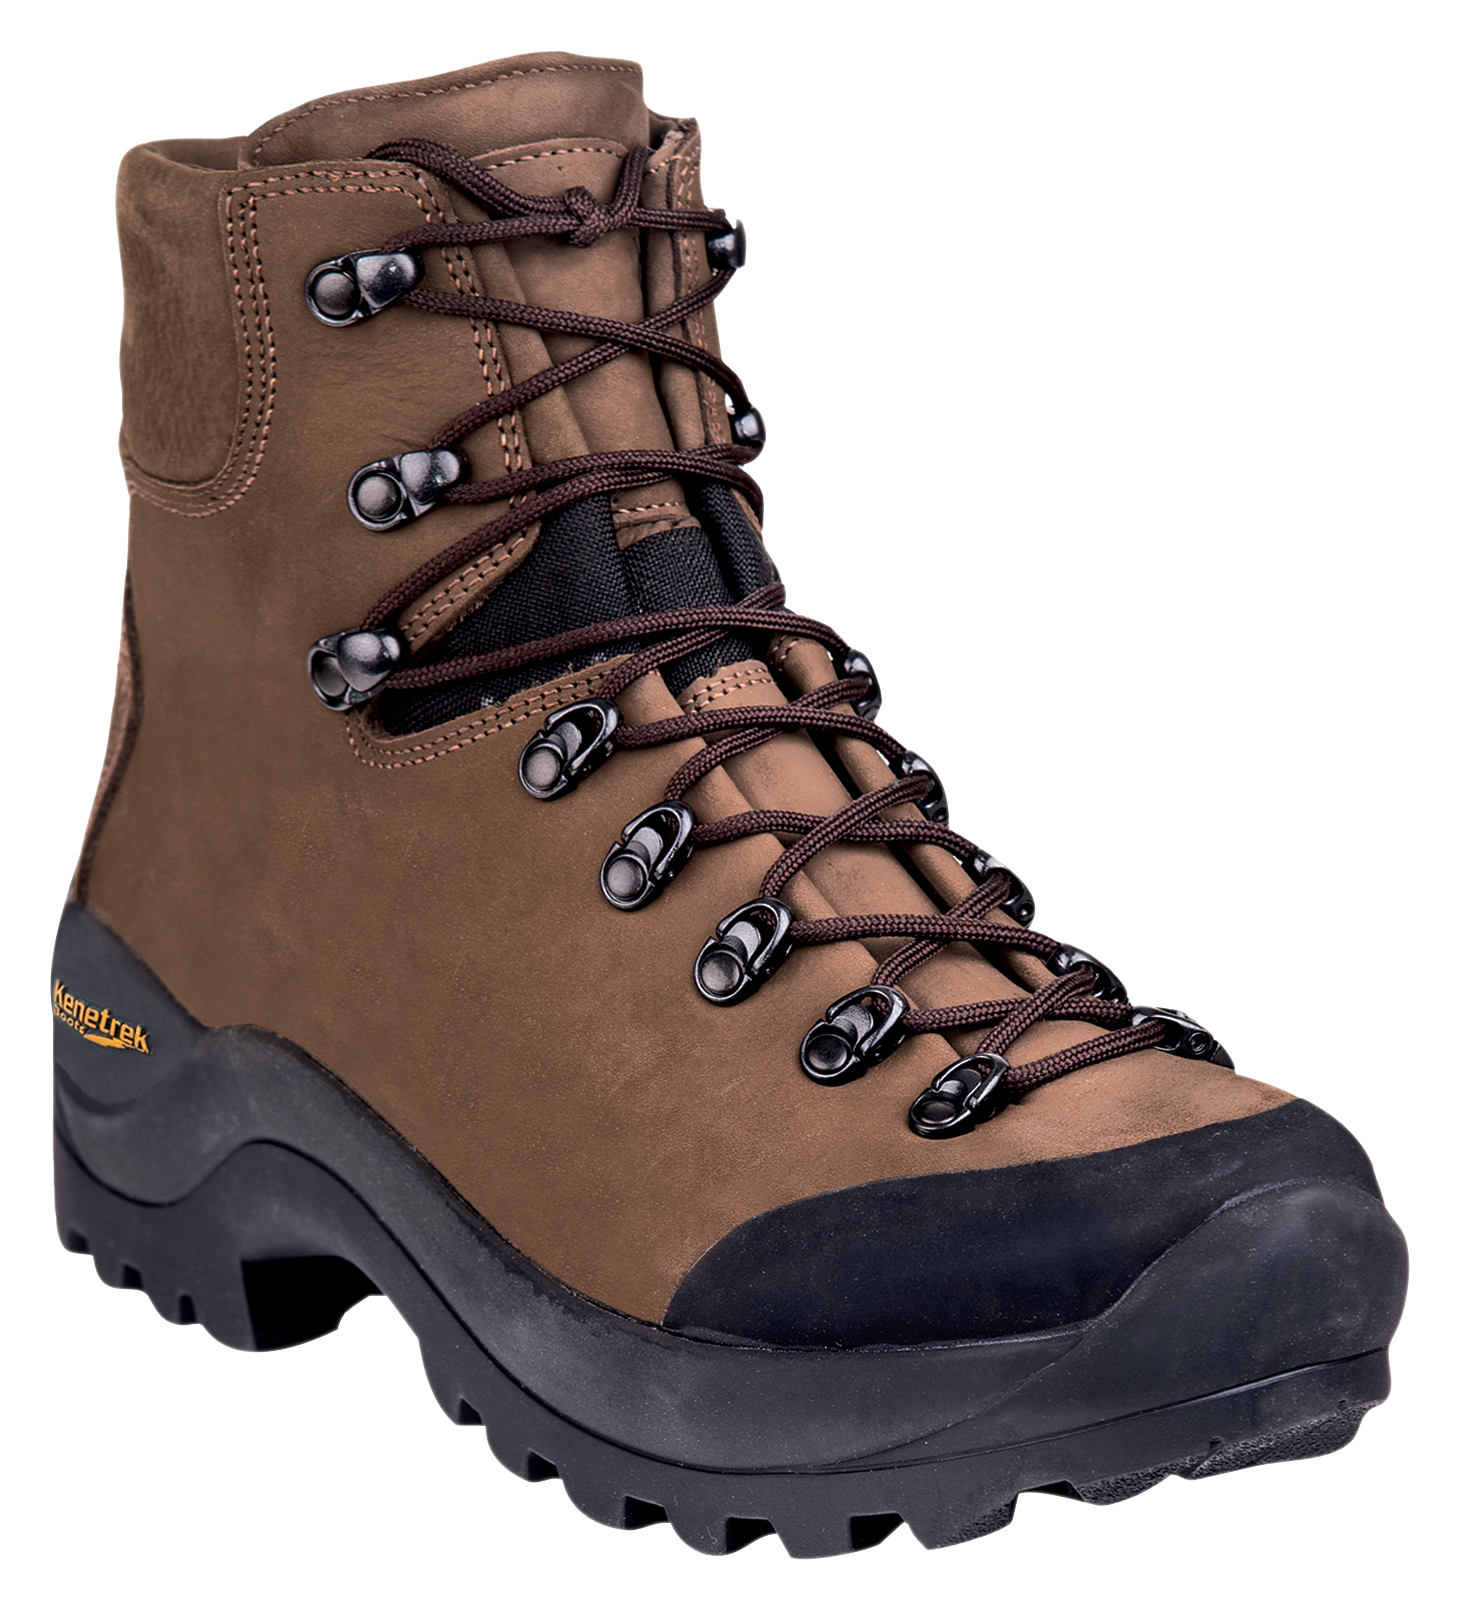 Kenetrek Desert Guide Hunting Boots for Men - Brown - 9M